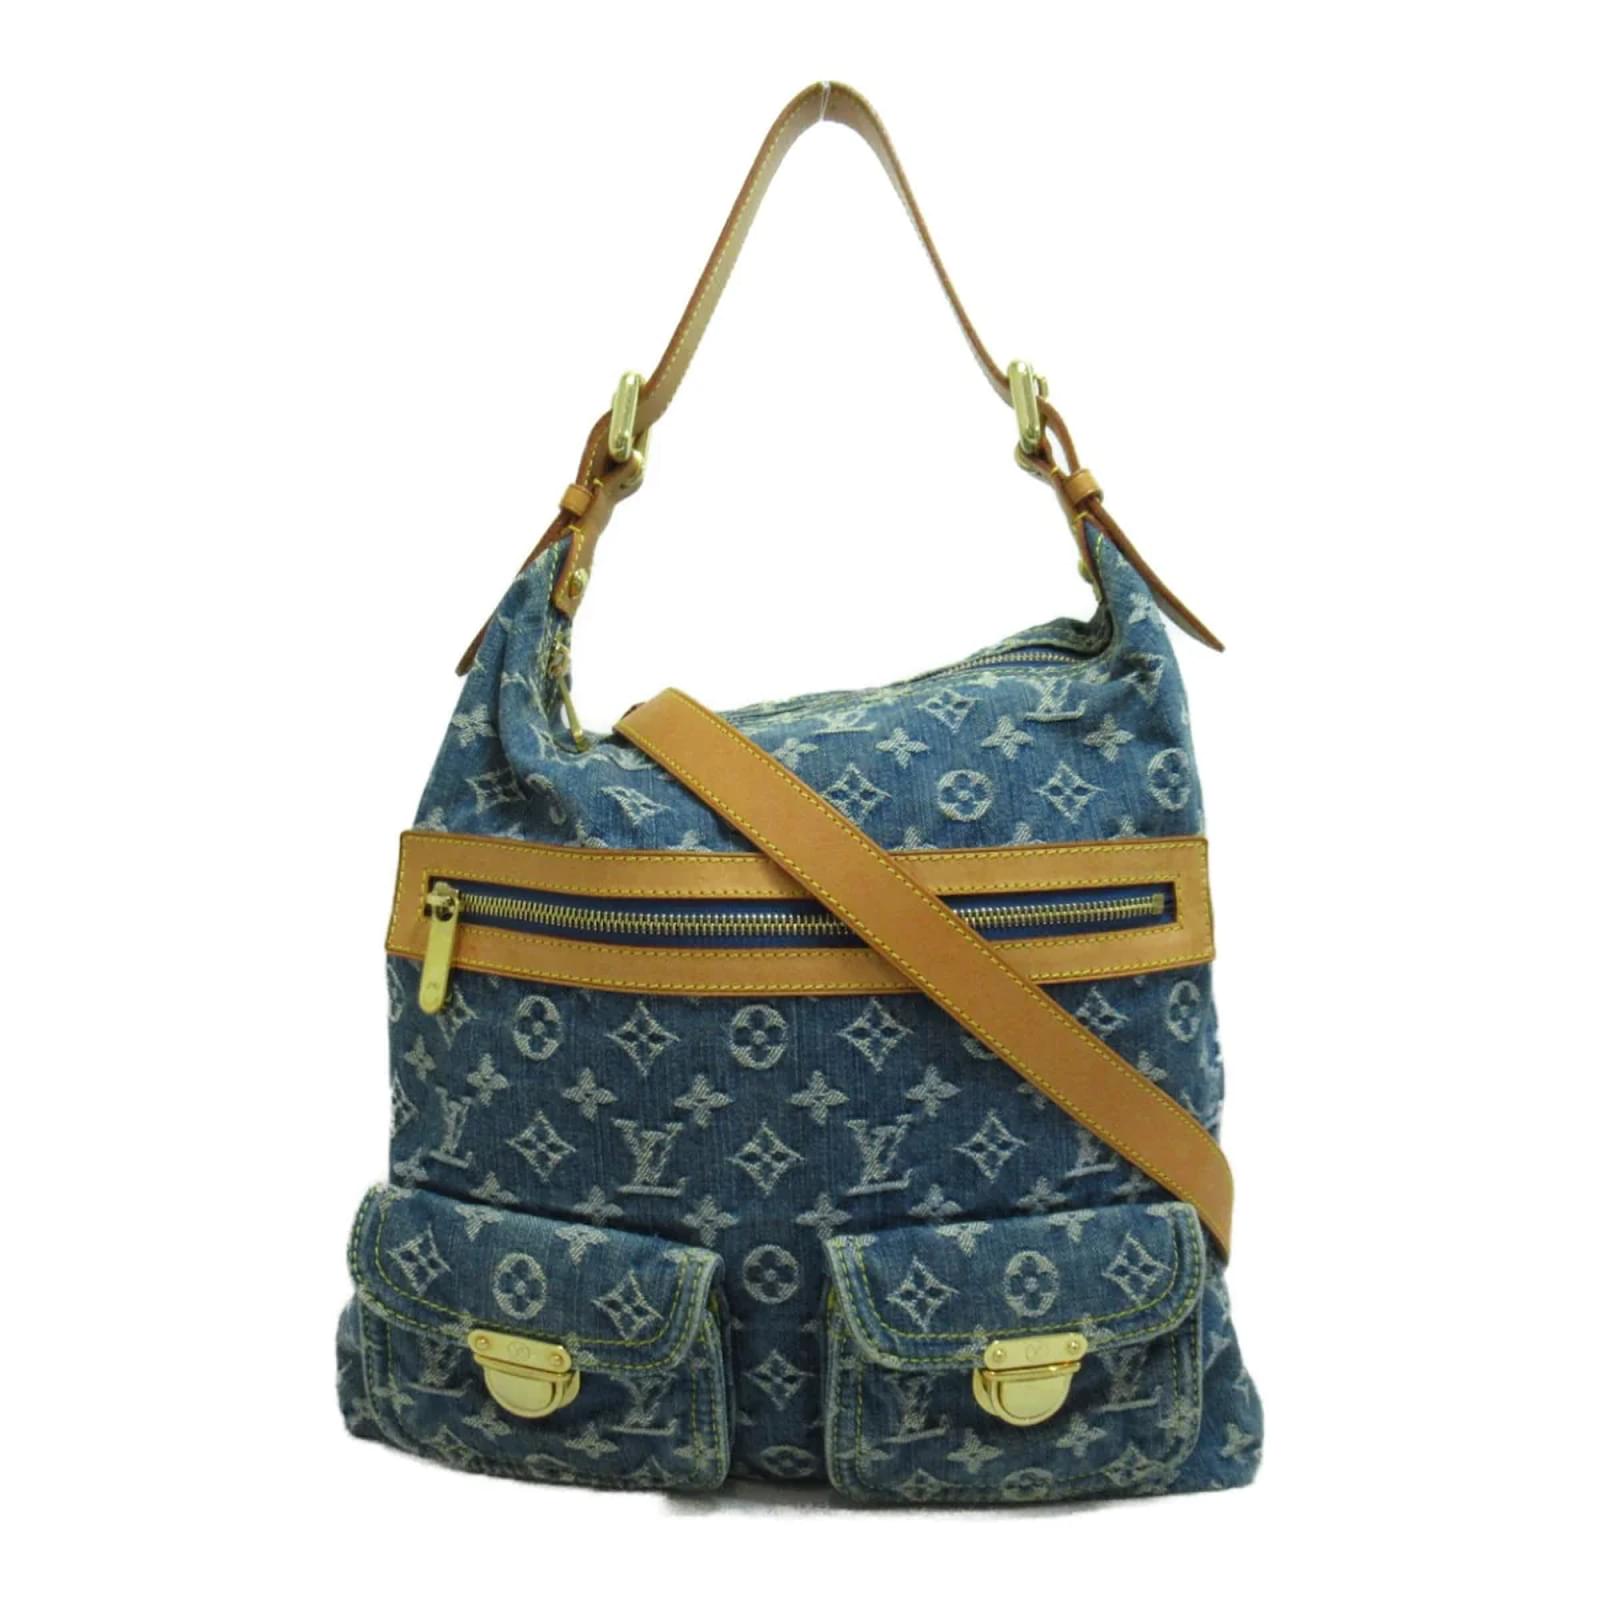 Louis Vuitton Baggy GM Denim Shoulder Bag on SALE